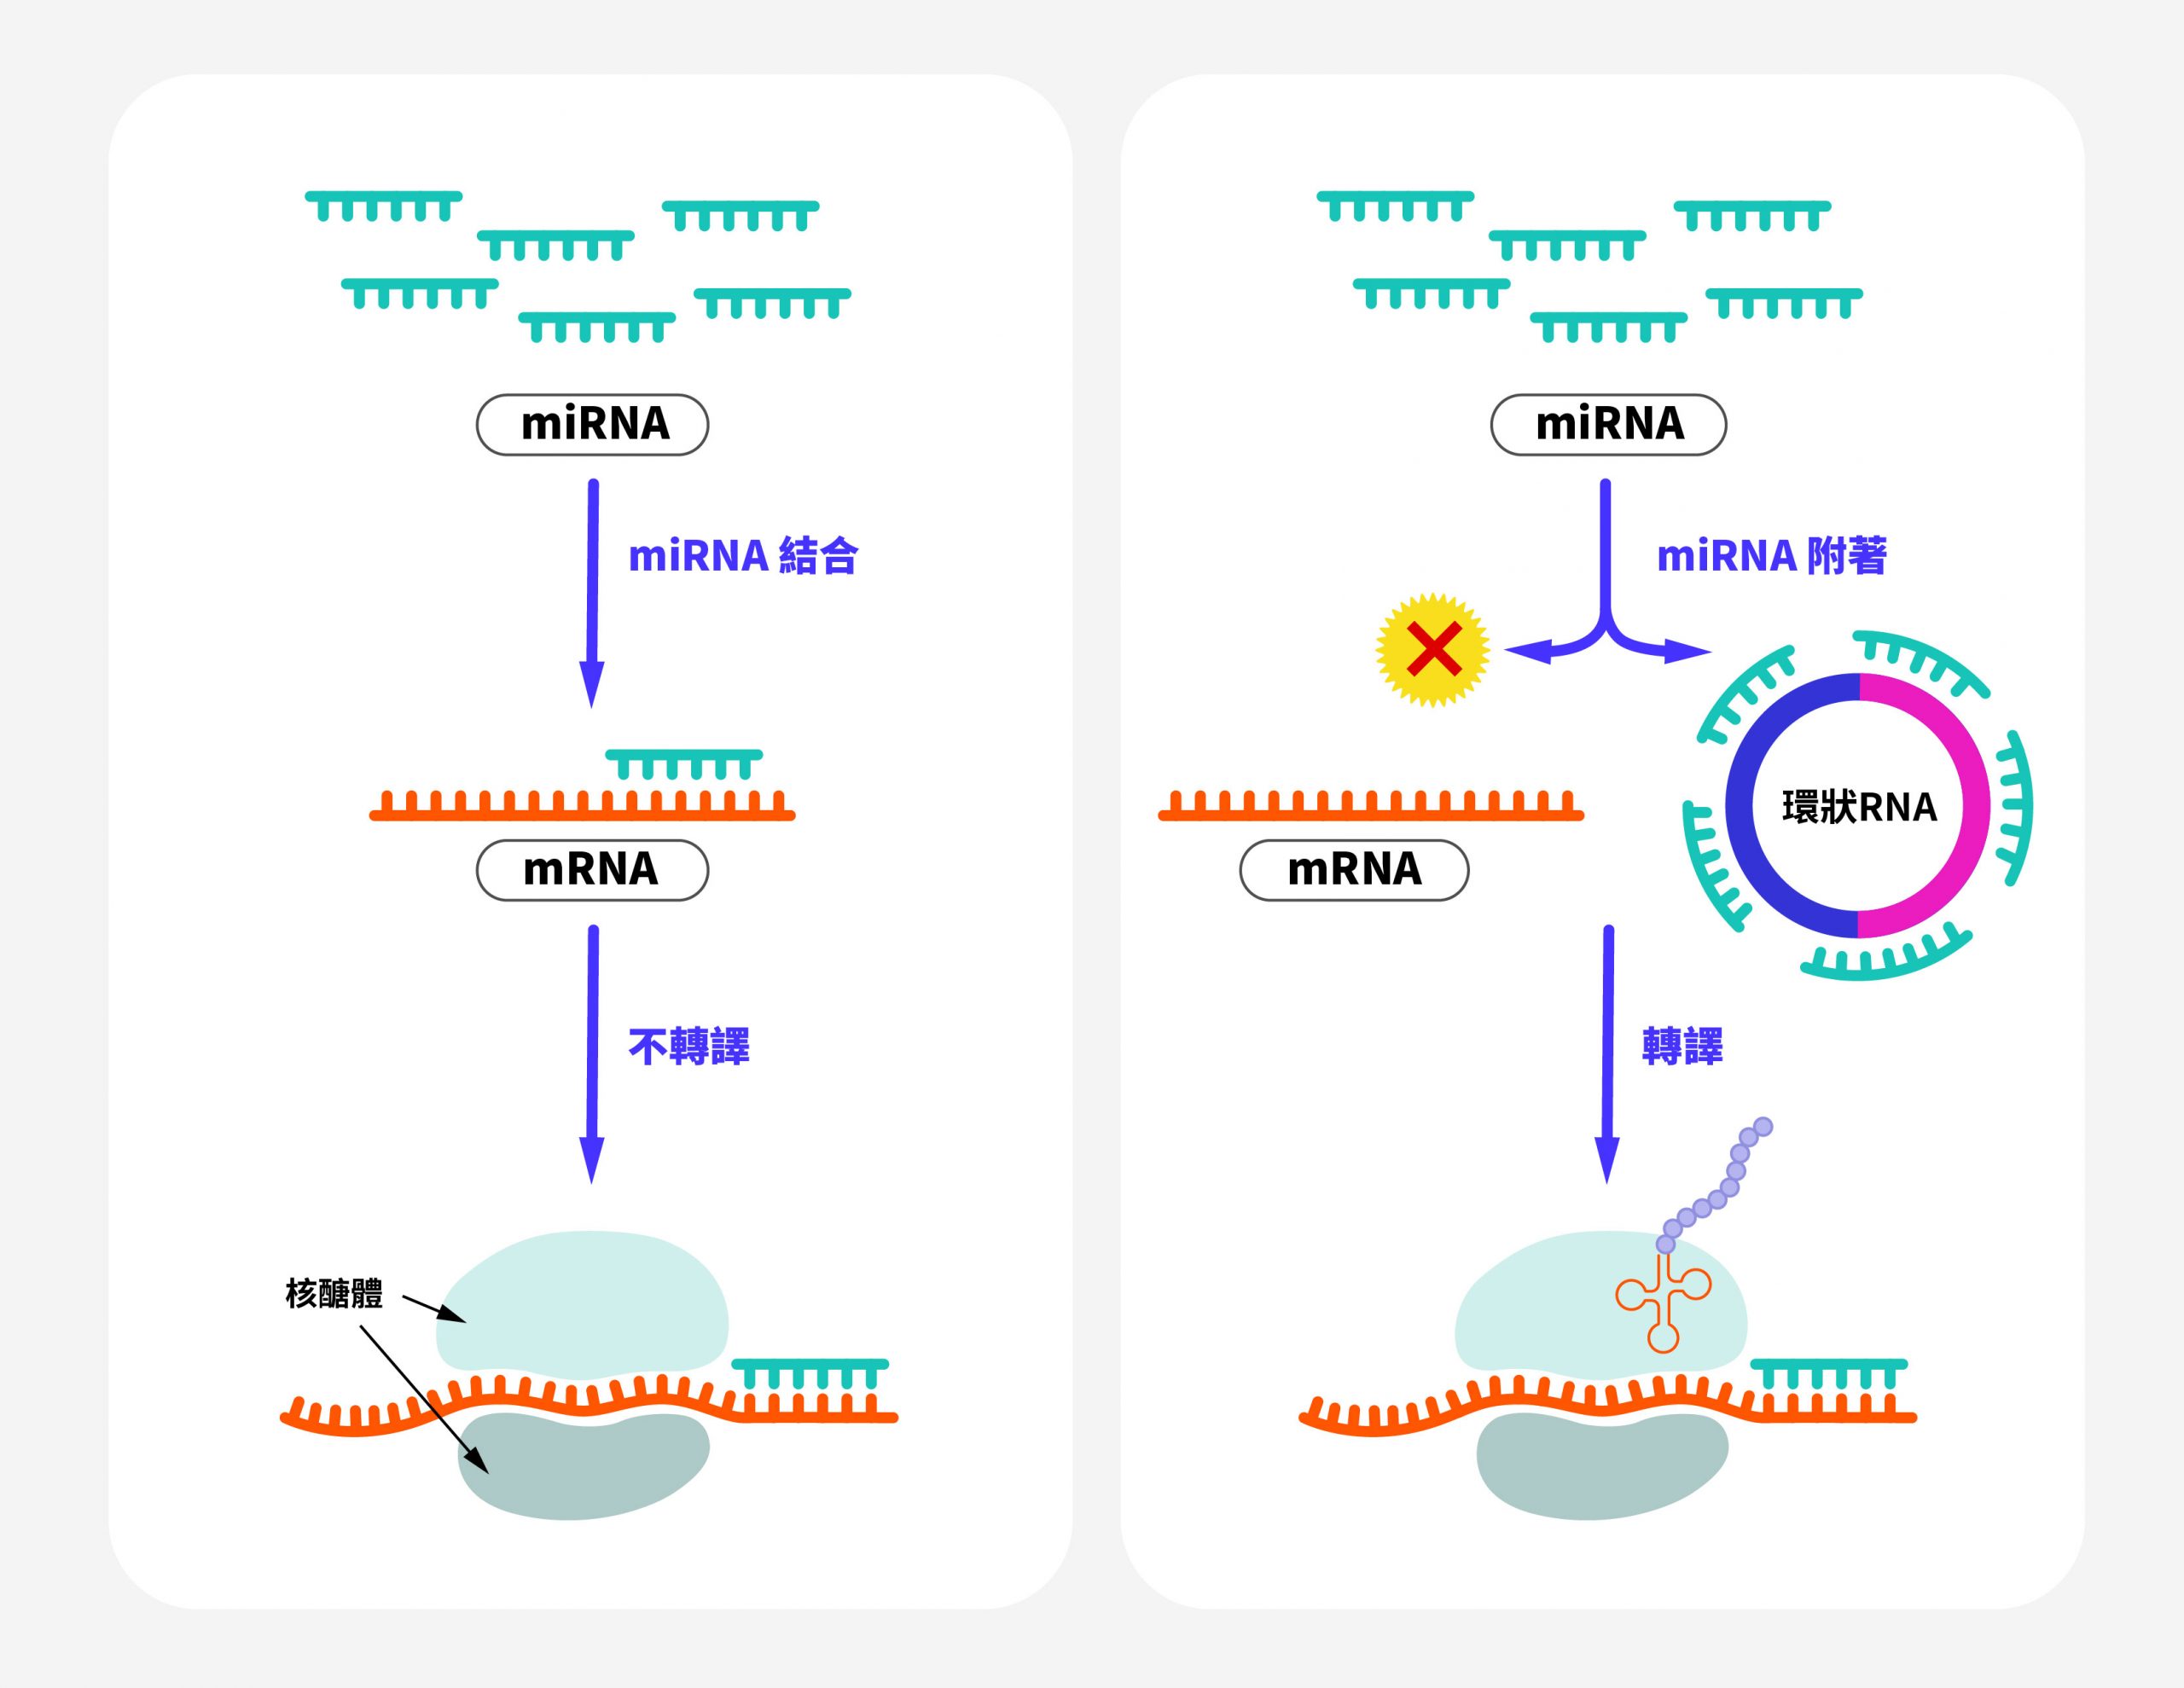 左圖是 miRNA 抑制 mRNA 轉譯的一般流程。右圖是環狀 RNA 像海綿一樣吸附 miRNA，讓 miRNA 原本抑制 mRNA 轉譯的「剎車」功能失去作用。因此環狀 RNA 透過直接影響 miRNA，就能間接參與調控其他的下游基因。 圖｜研之有物（資料來源｜Frontiers in Cardiovascular Medicine）